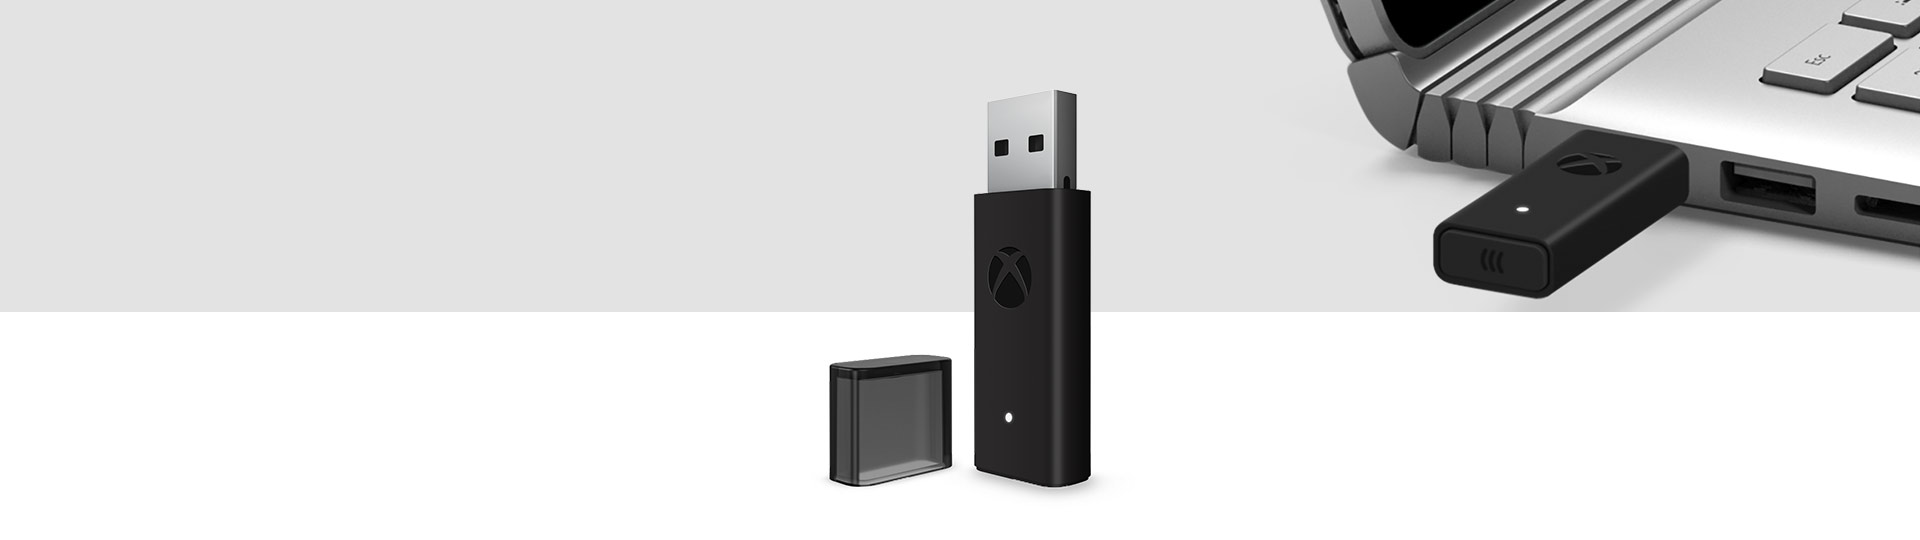 Беспроводной адаптер геймпада Xbox для Windows 10 и беспроводной адаптер Xbox, включенный в USB-порт ноутбука на заднем плане.